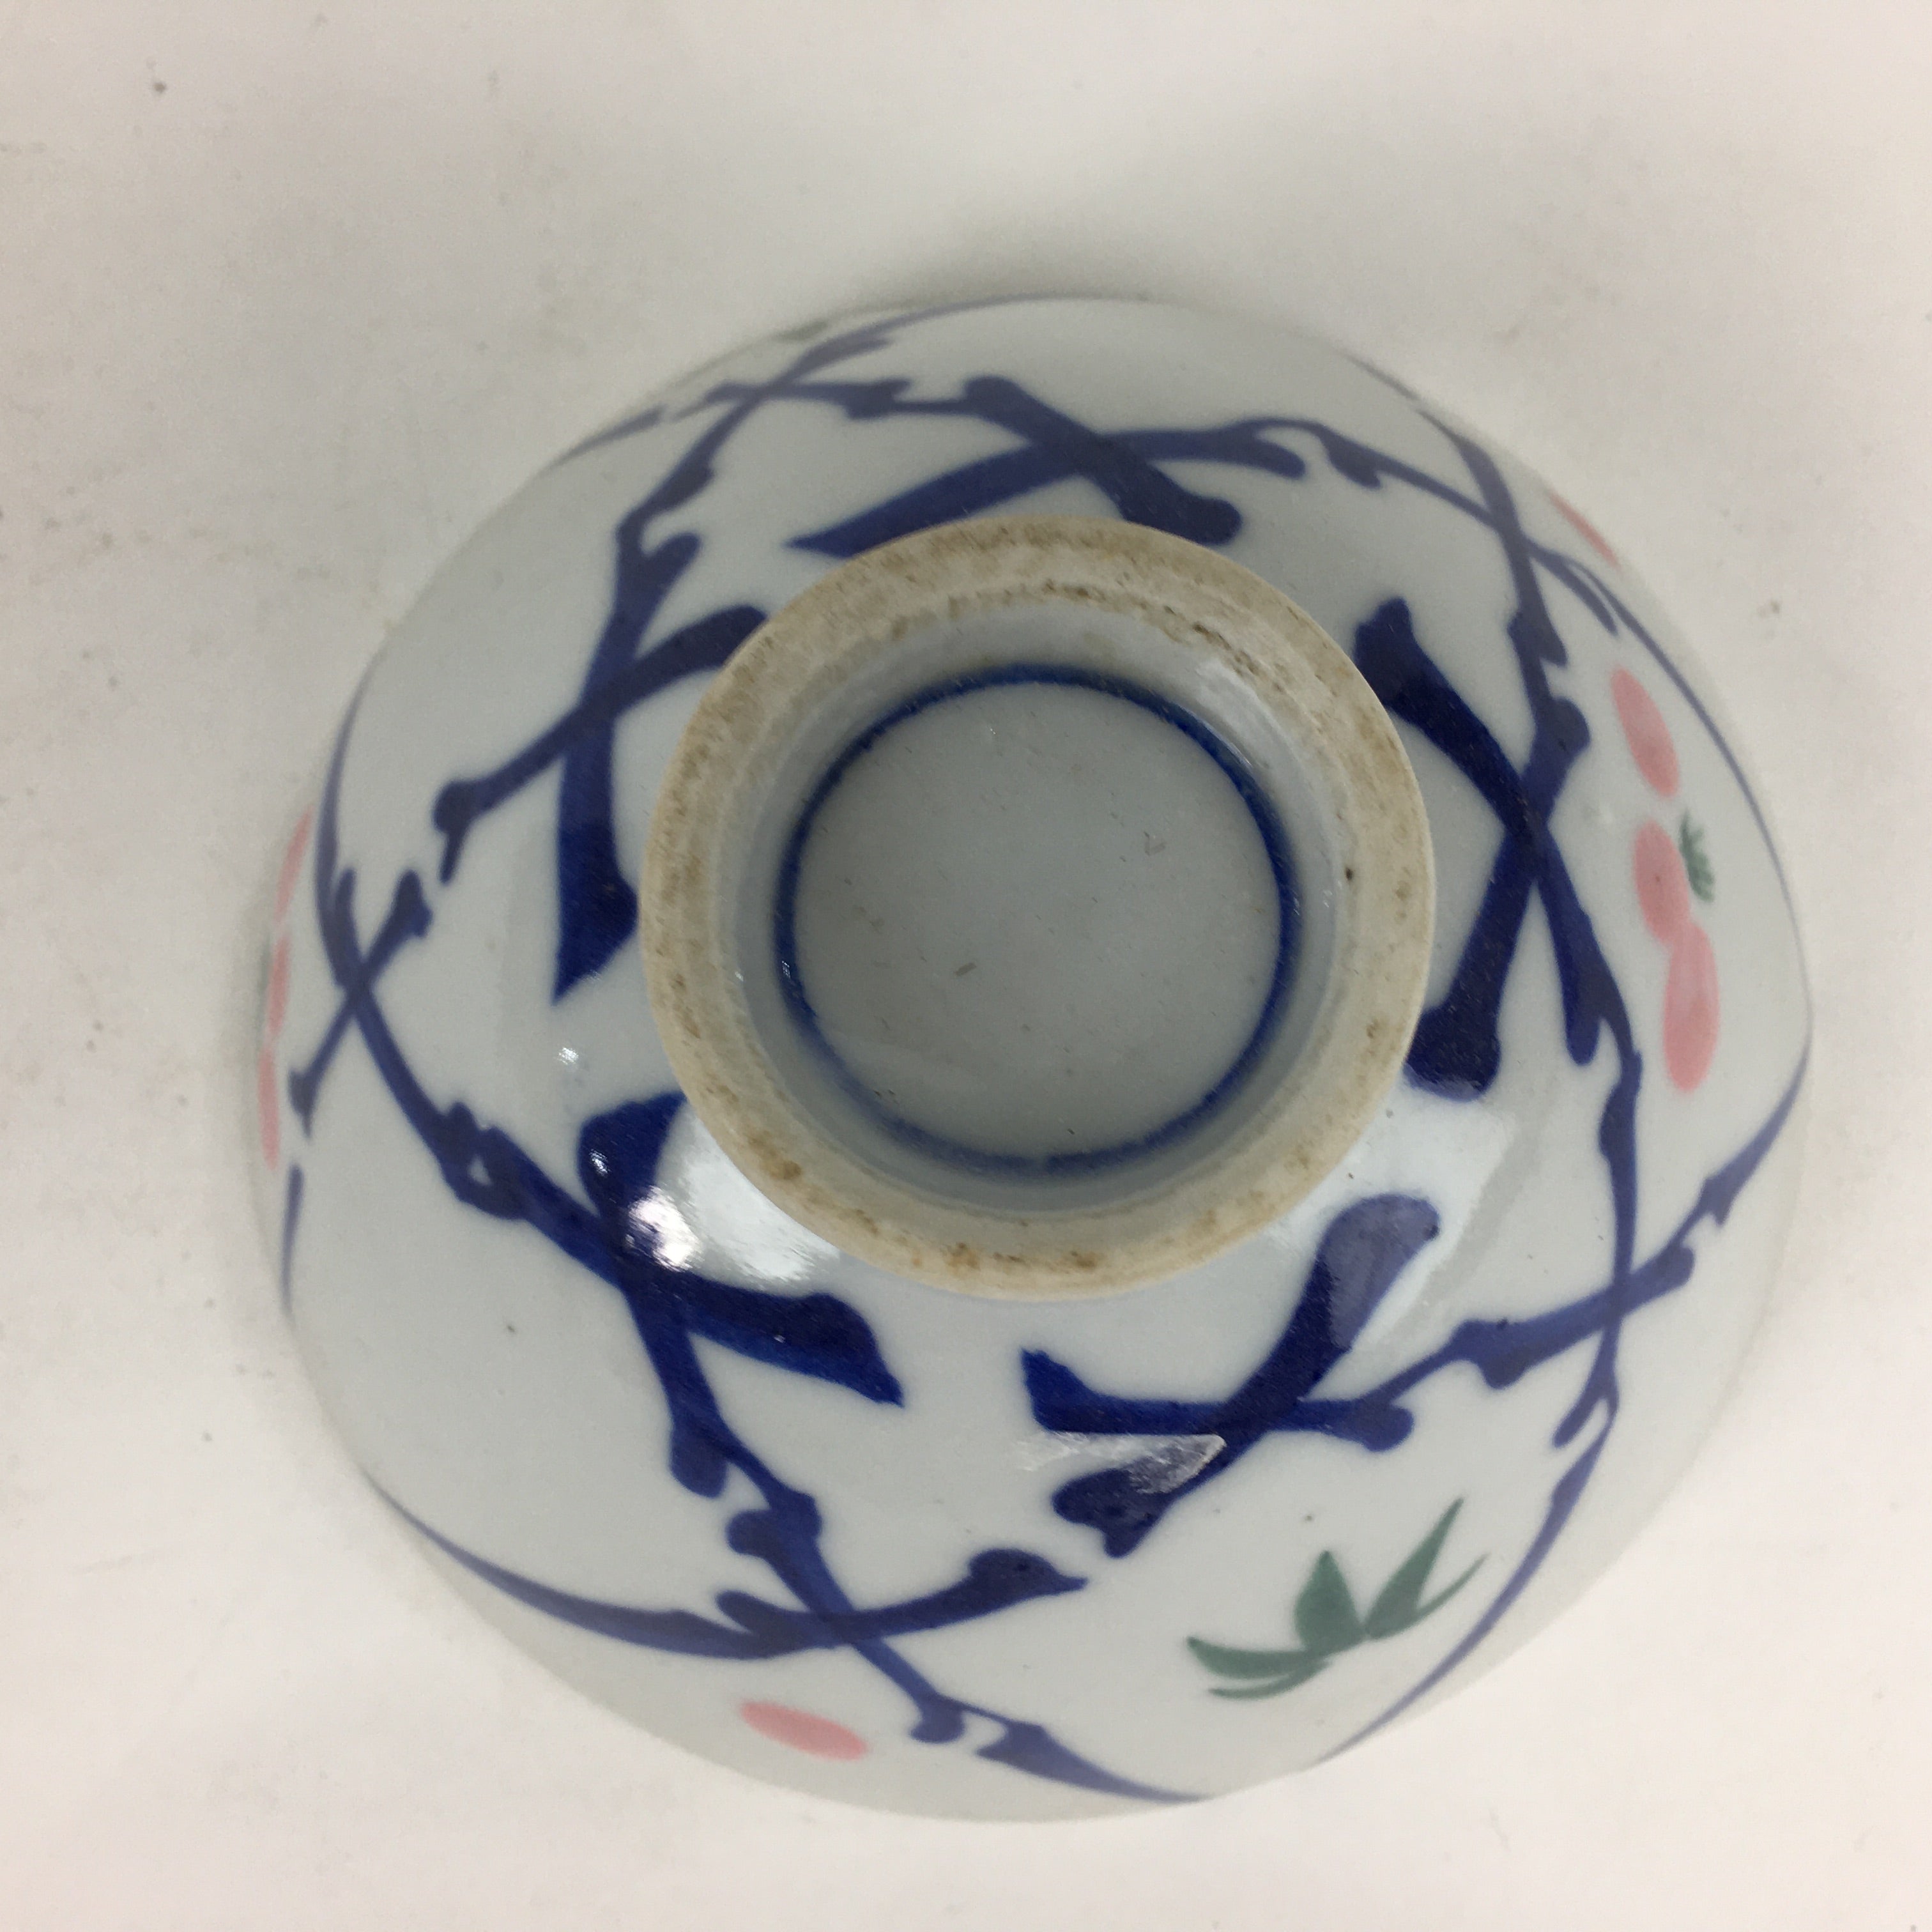 Japanese Porcelain Rice Bowl Vtg Plum blossoms Sometsuke White Chawan PP885